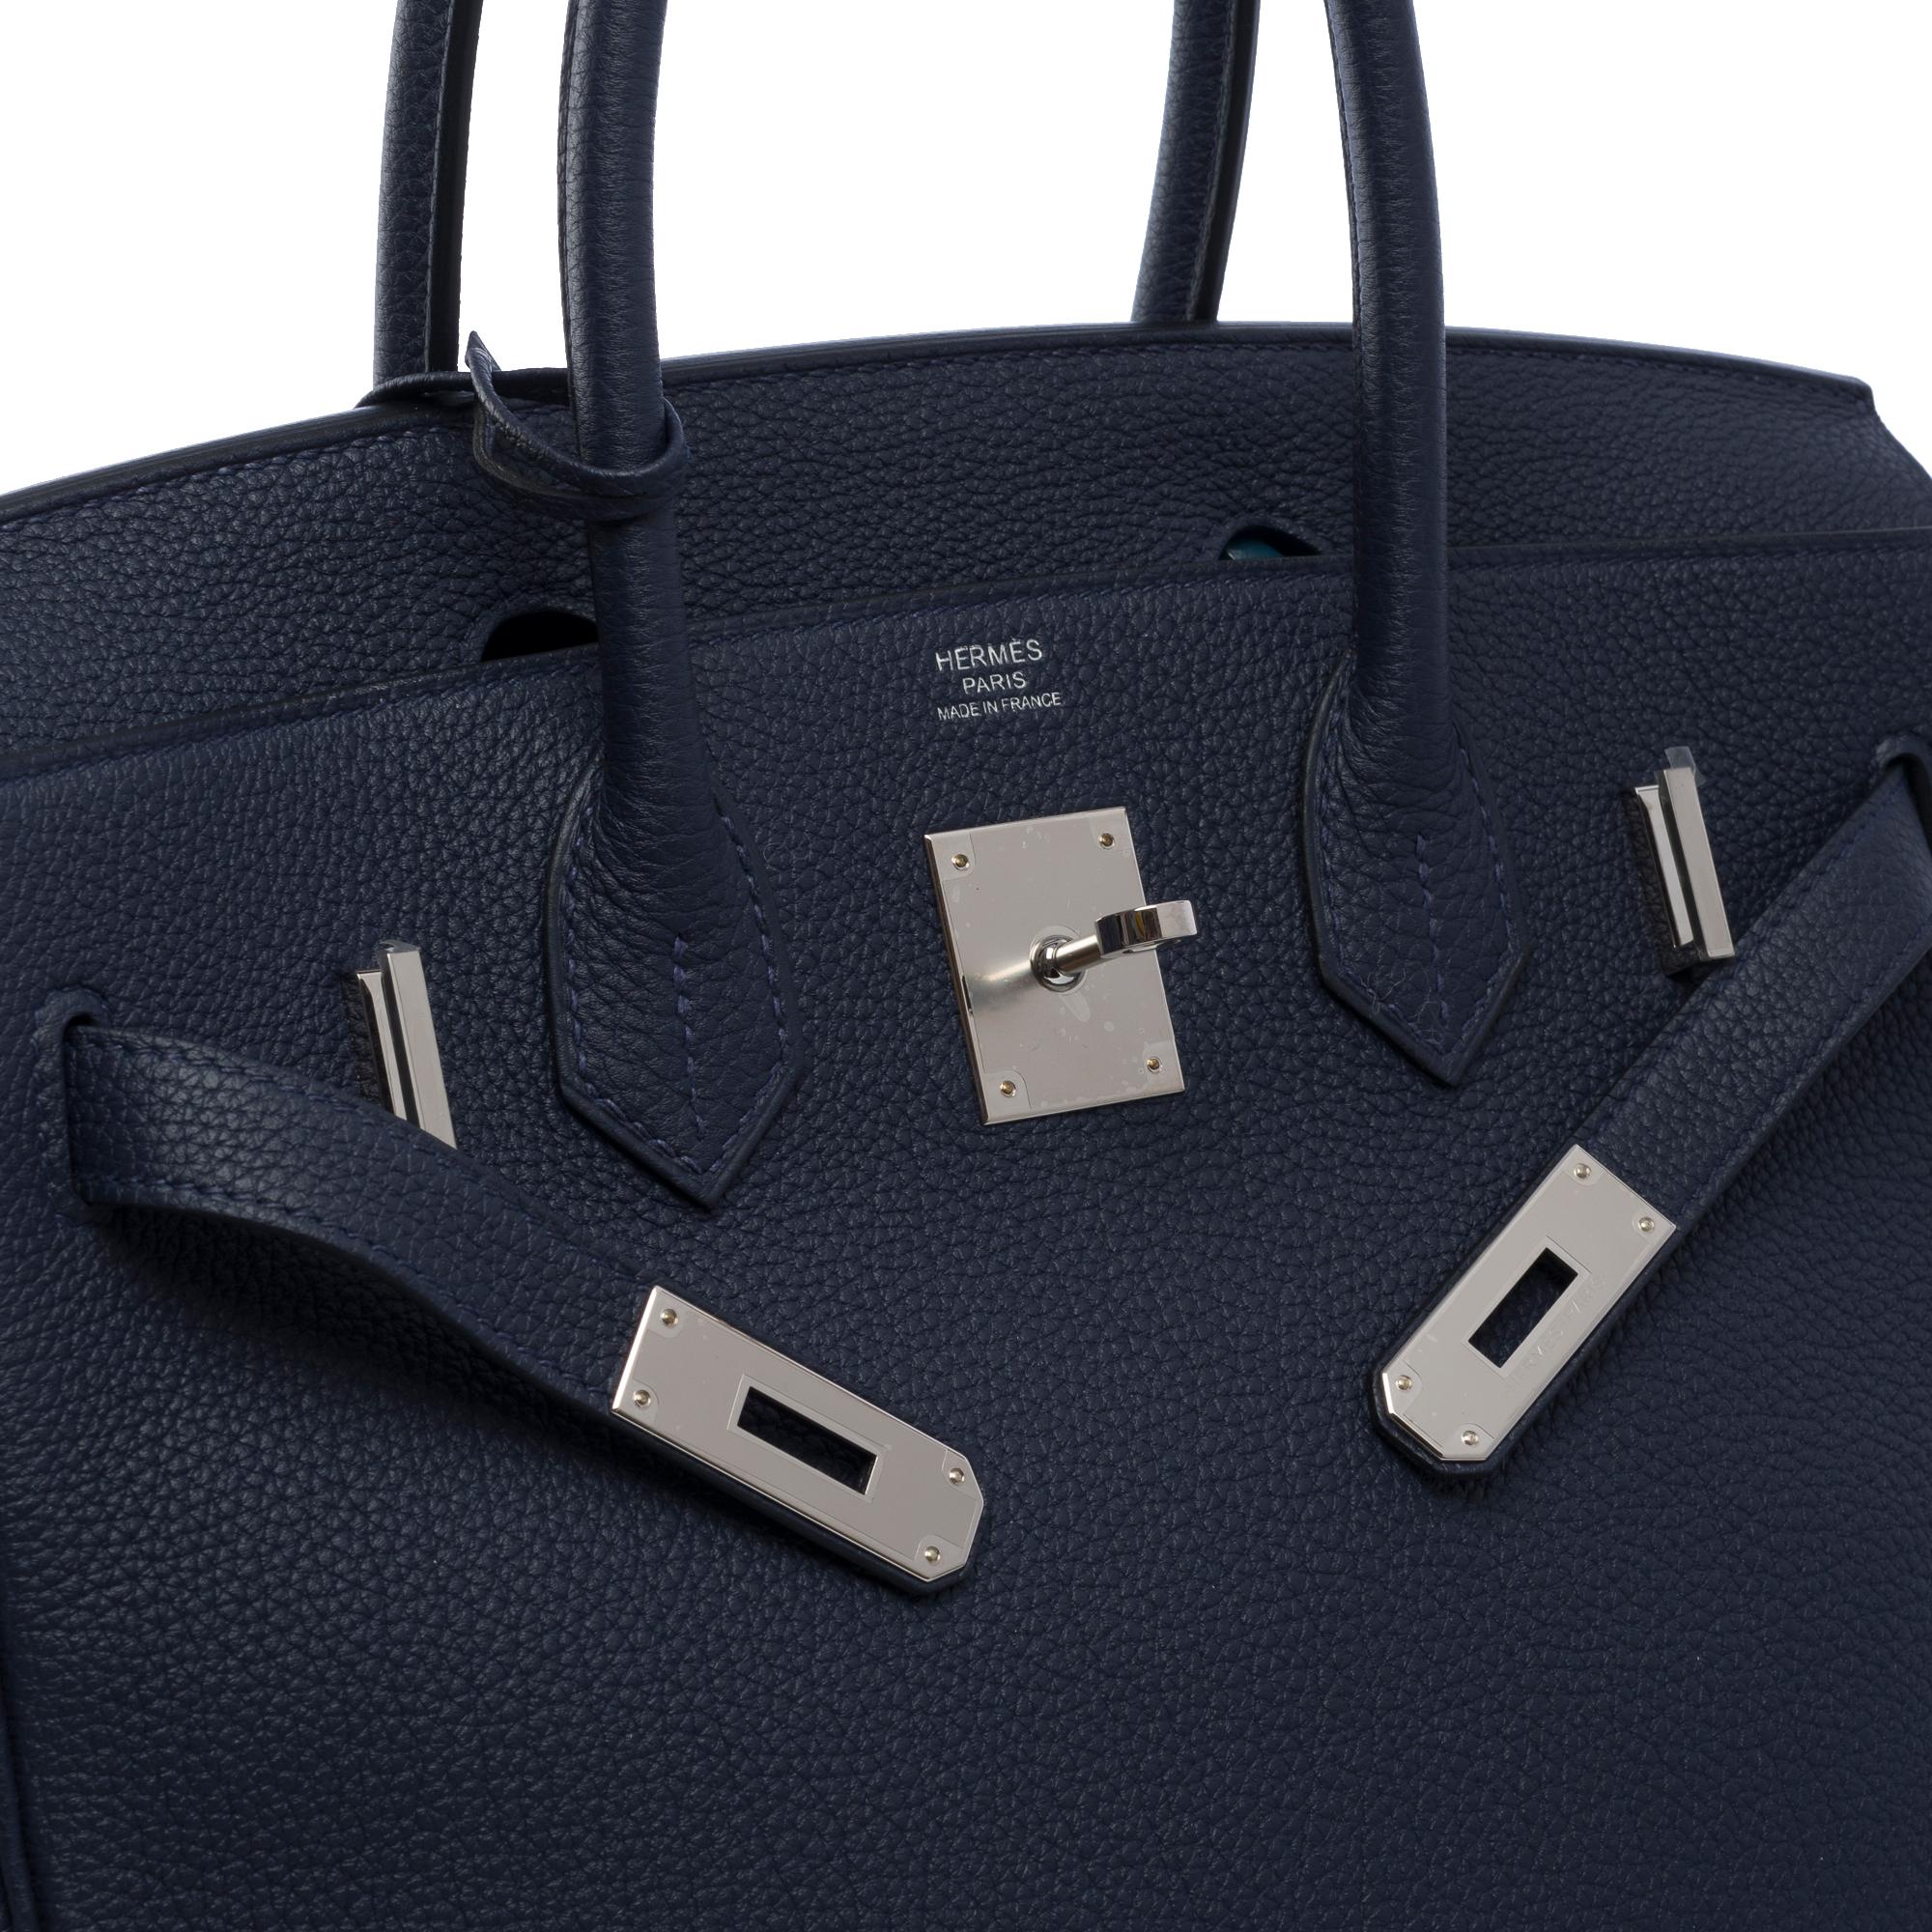 Hermes Birkin 30 handbag in Bleu nuit Togo leather, SHW For Sale 2